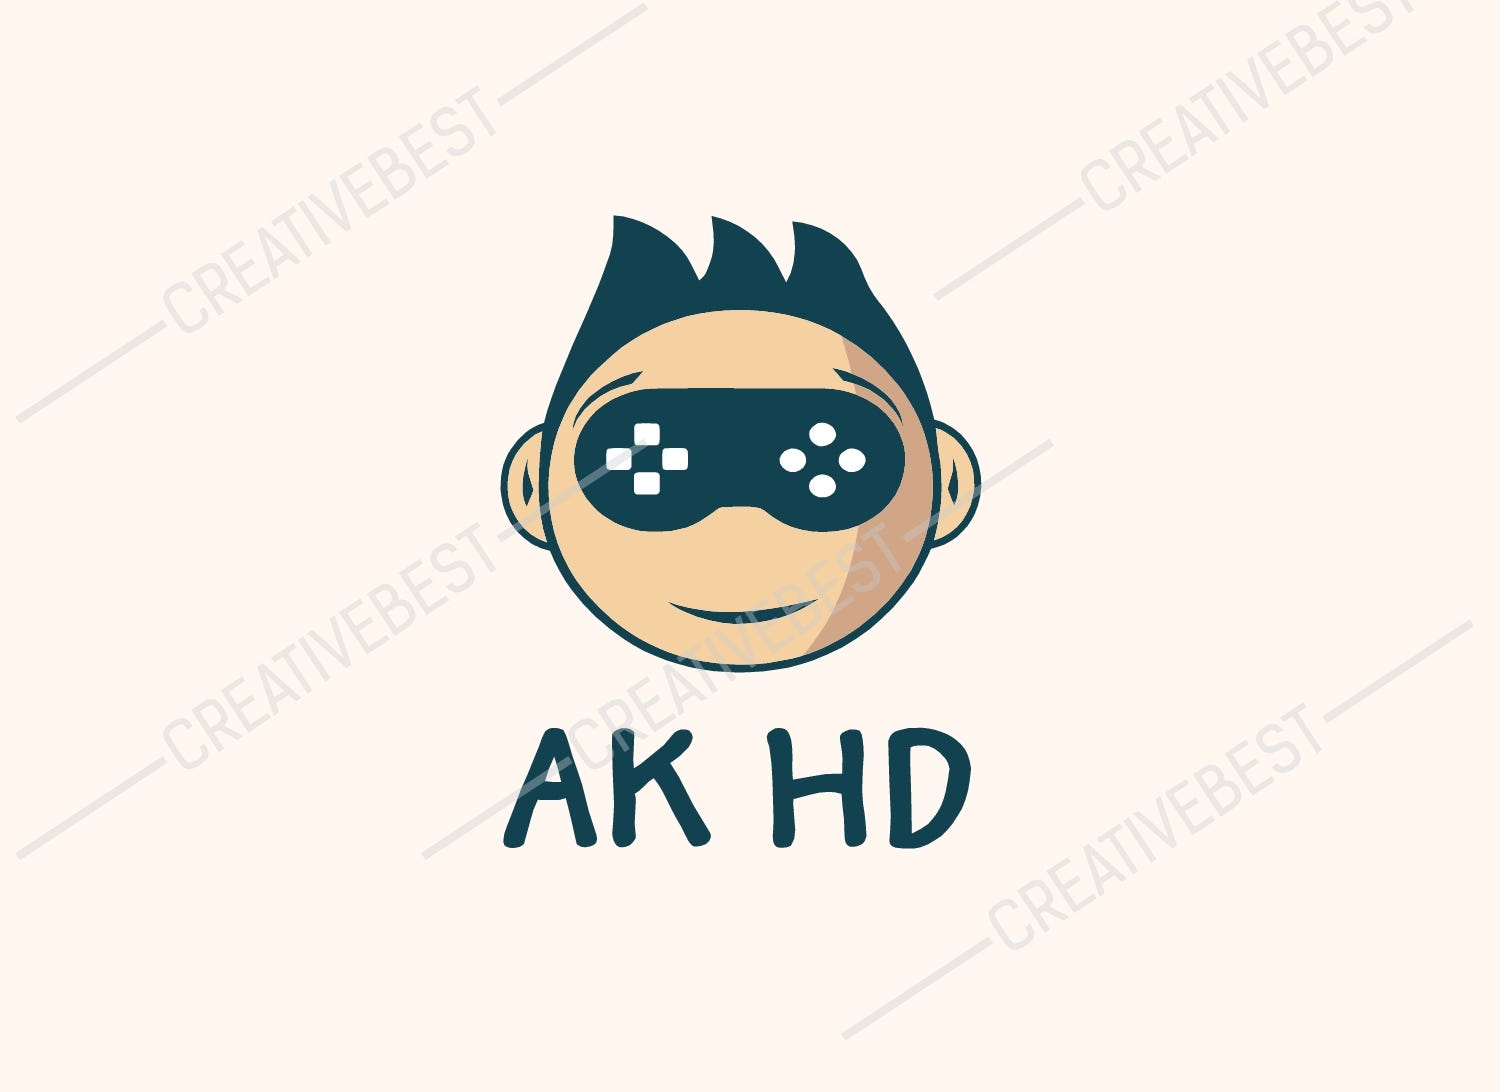 AK HD